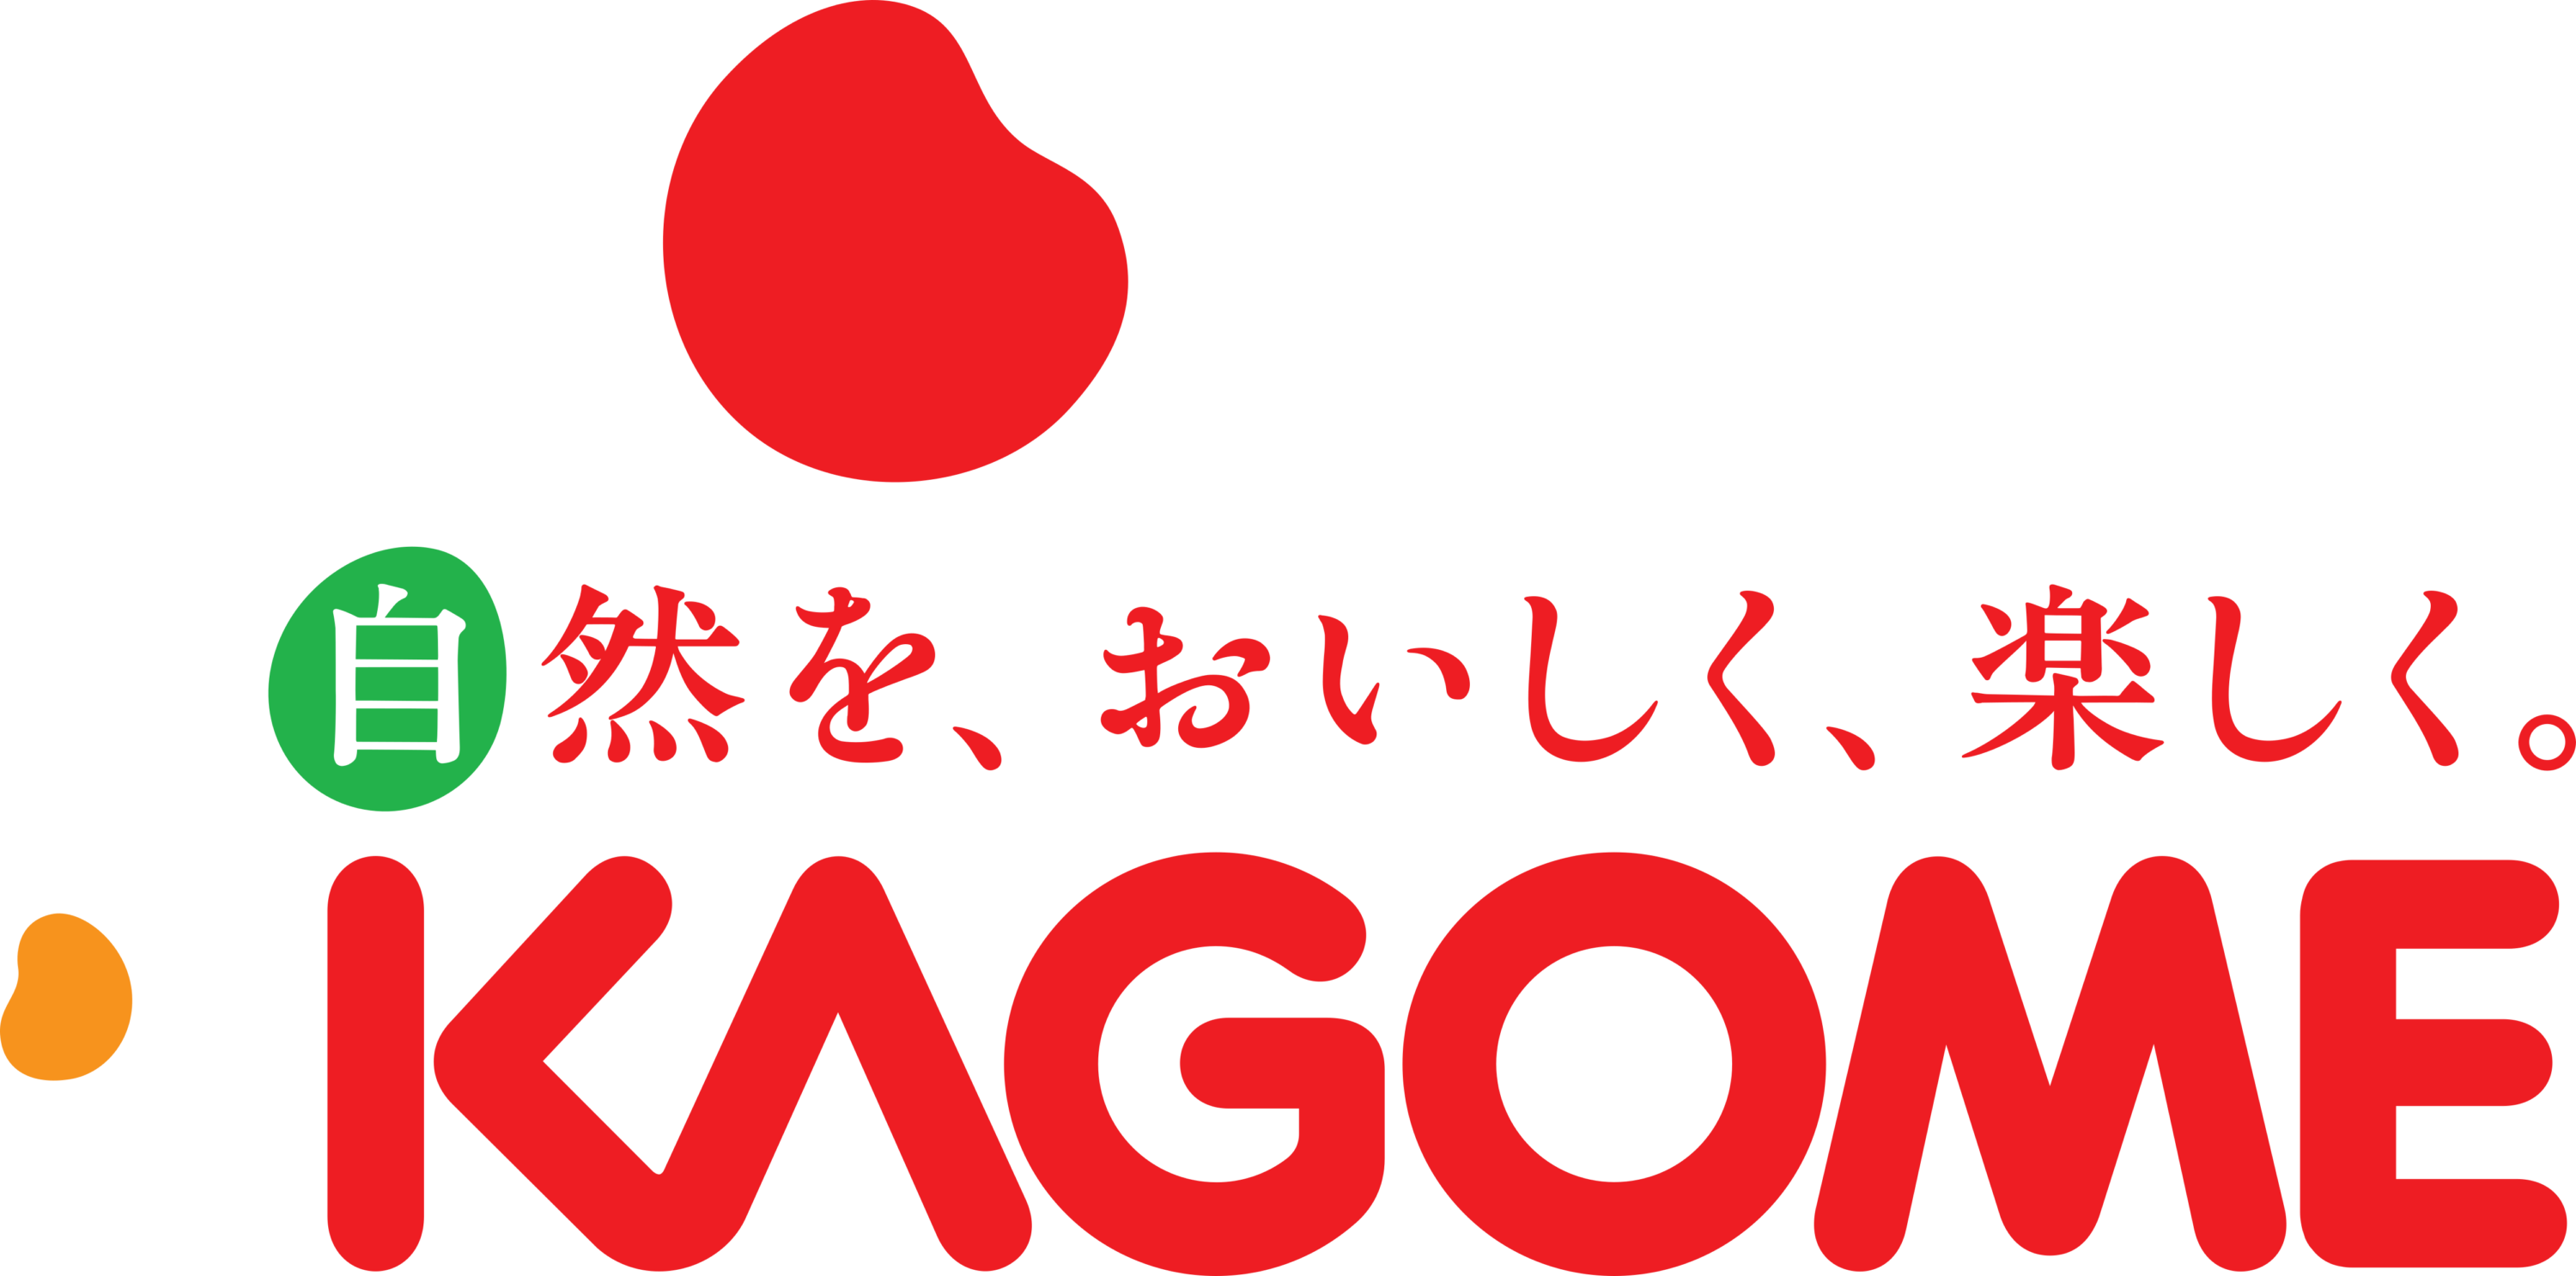 Kagome Logo